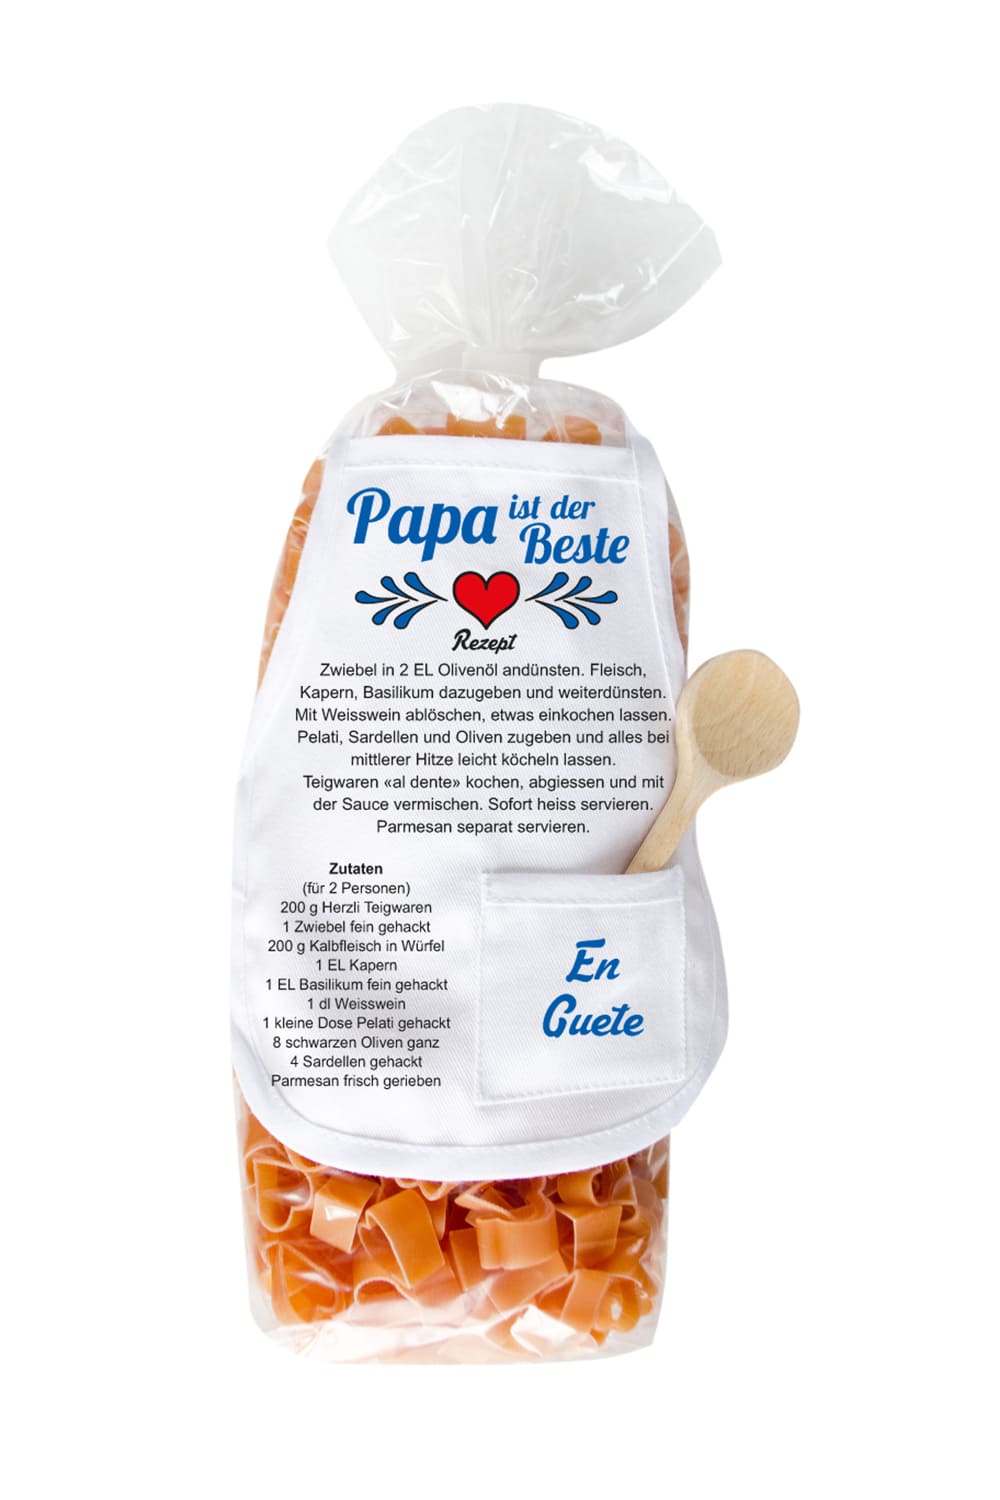 Papa Herz Pasta als Nudelgeschenk zum Geburtatg oder als Geschenk zum Vatertag. Pasta in Herz Form in einer schoenen Verpackung mit Holz Kochloeffel. Geschenk fuer den Vater